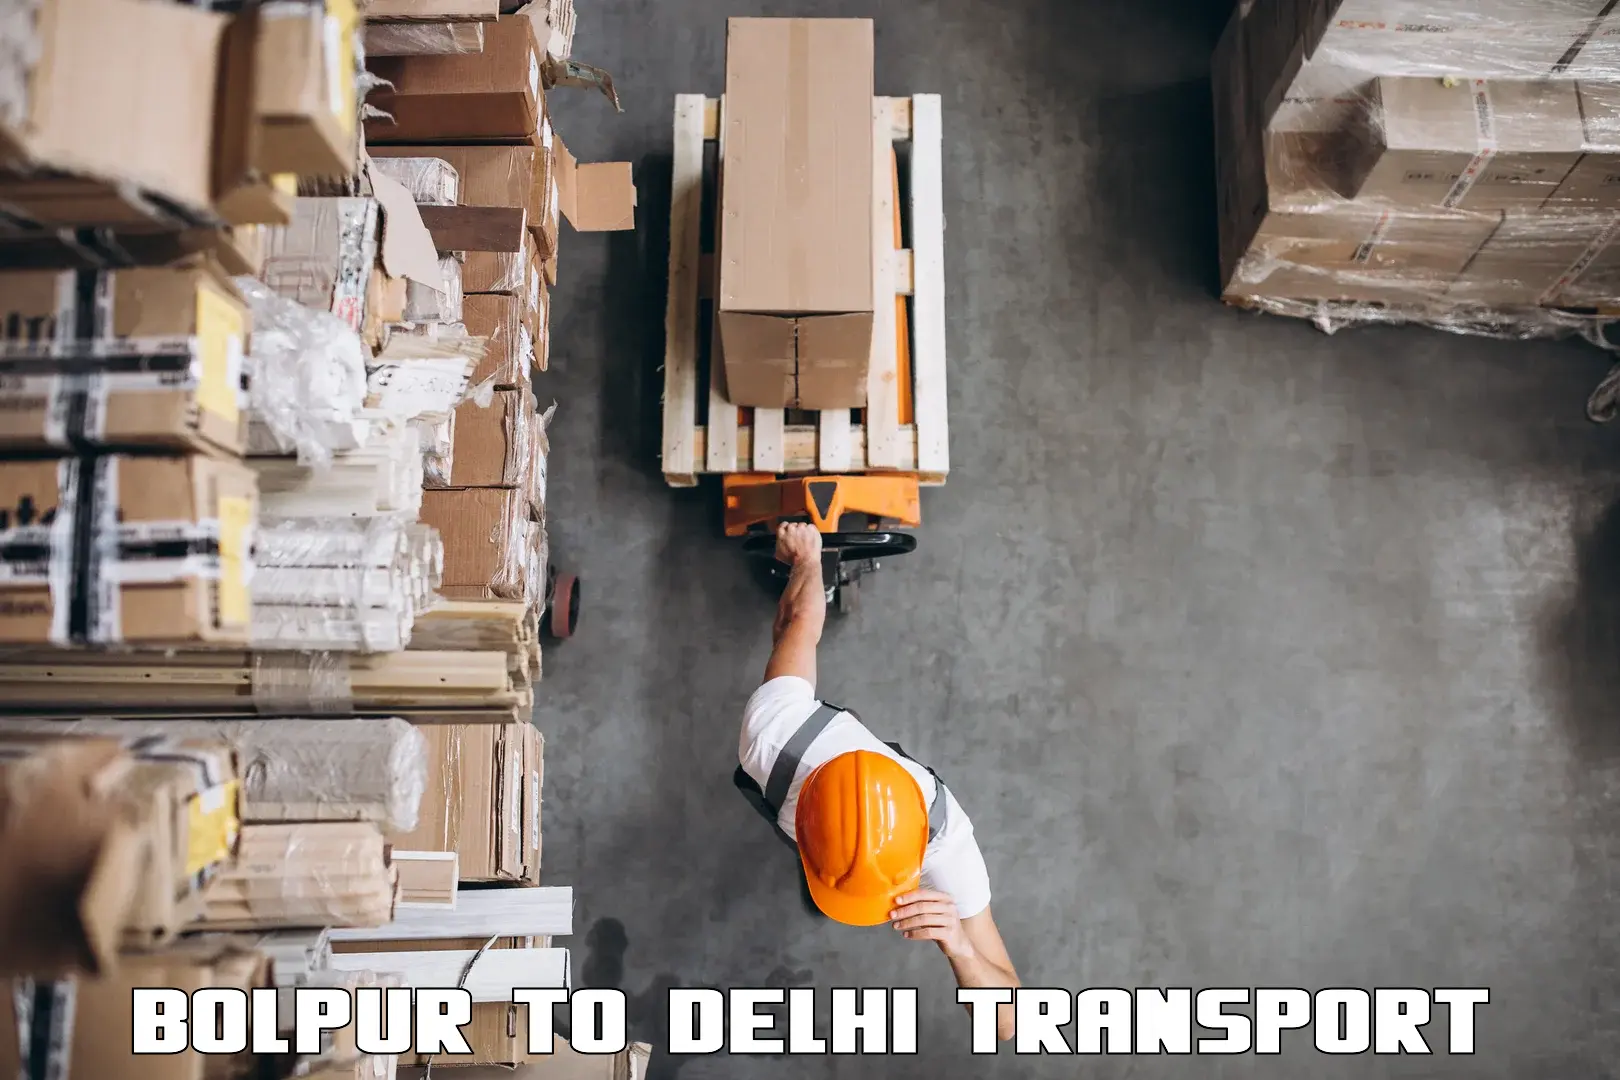 Shipping partner Bolpur to East Delhi